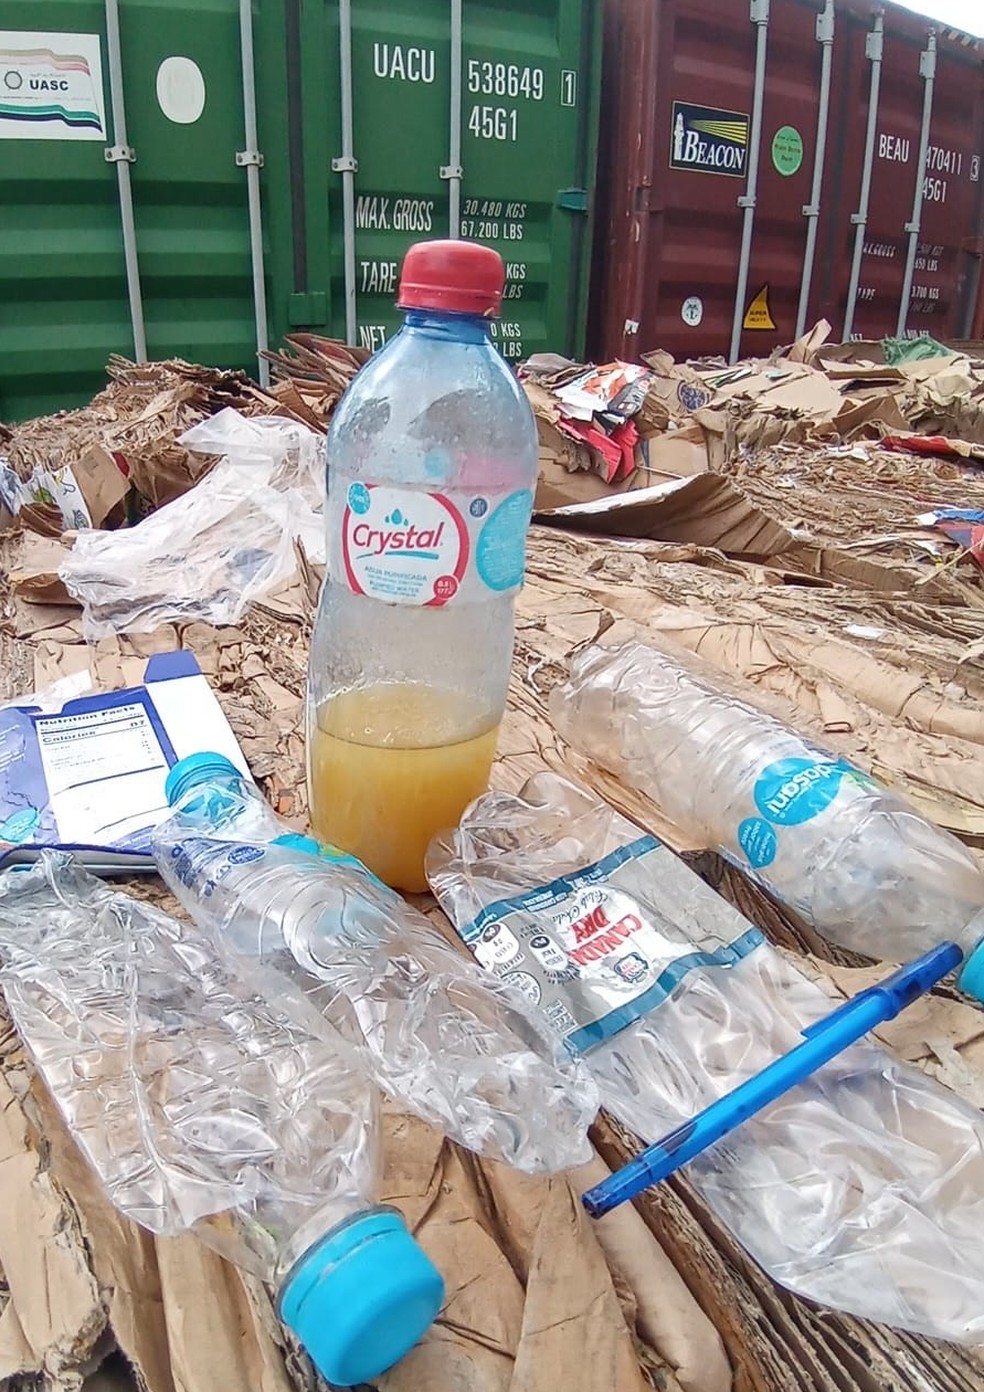 Lixo foi encontrado em carga no Porto de Santos, SP — Foto: Reprodução/Ibama